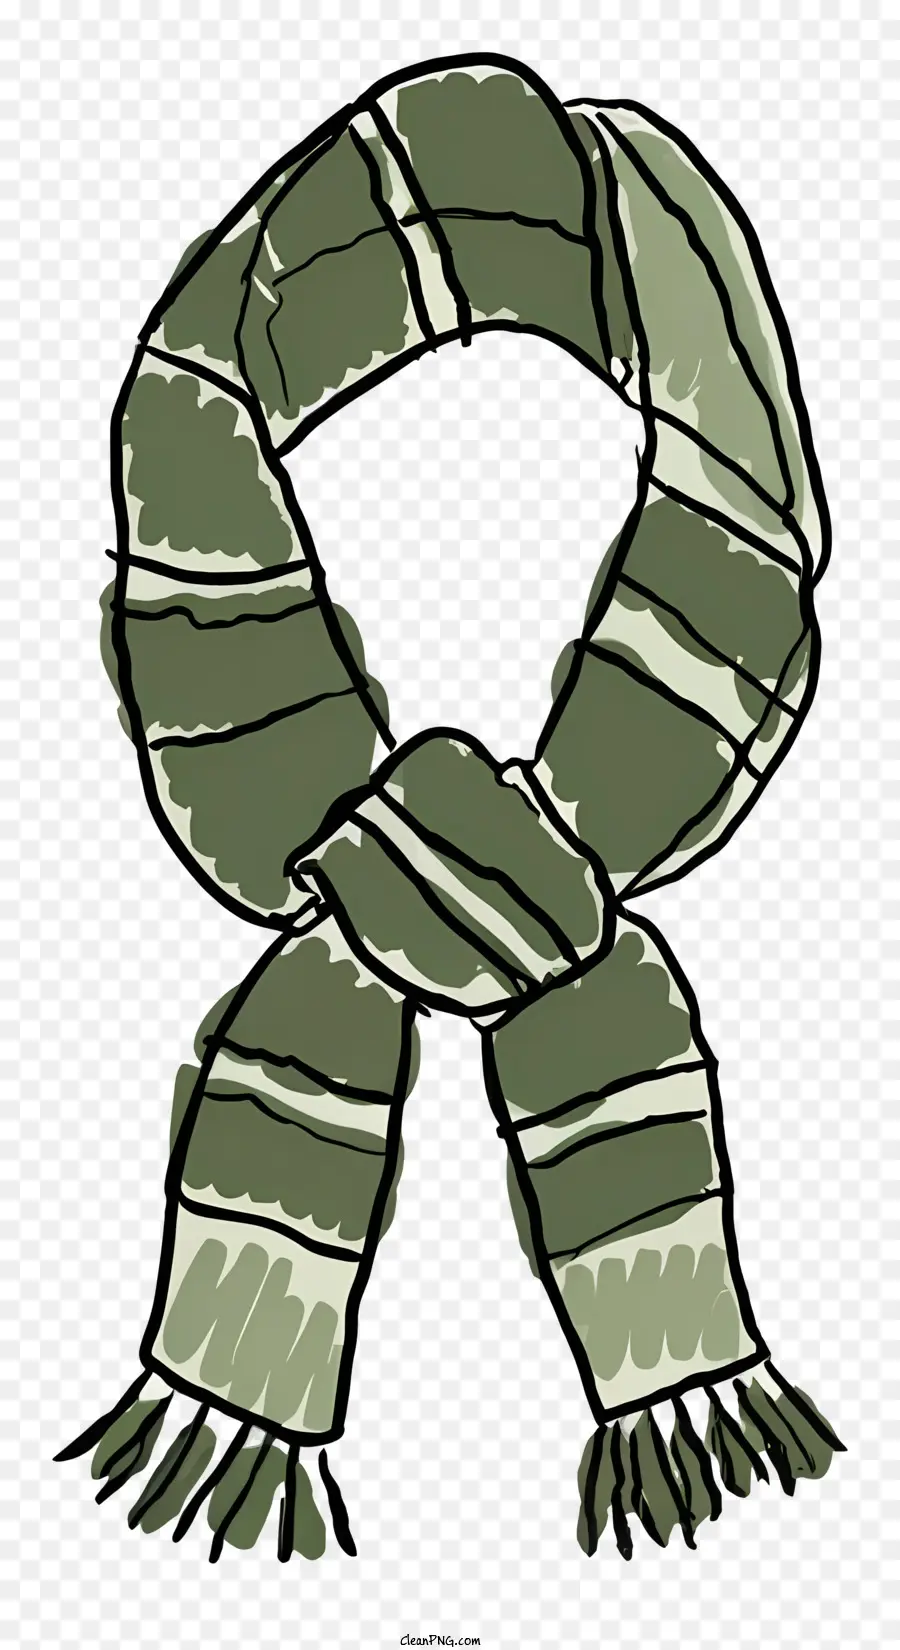 Grüner und weißer gestreiften Schal Leichter gewebter Schal - Gestreiftes grün -weißer Schal mit Randflächen